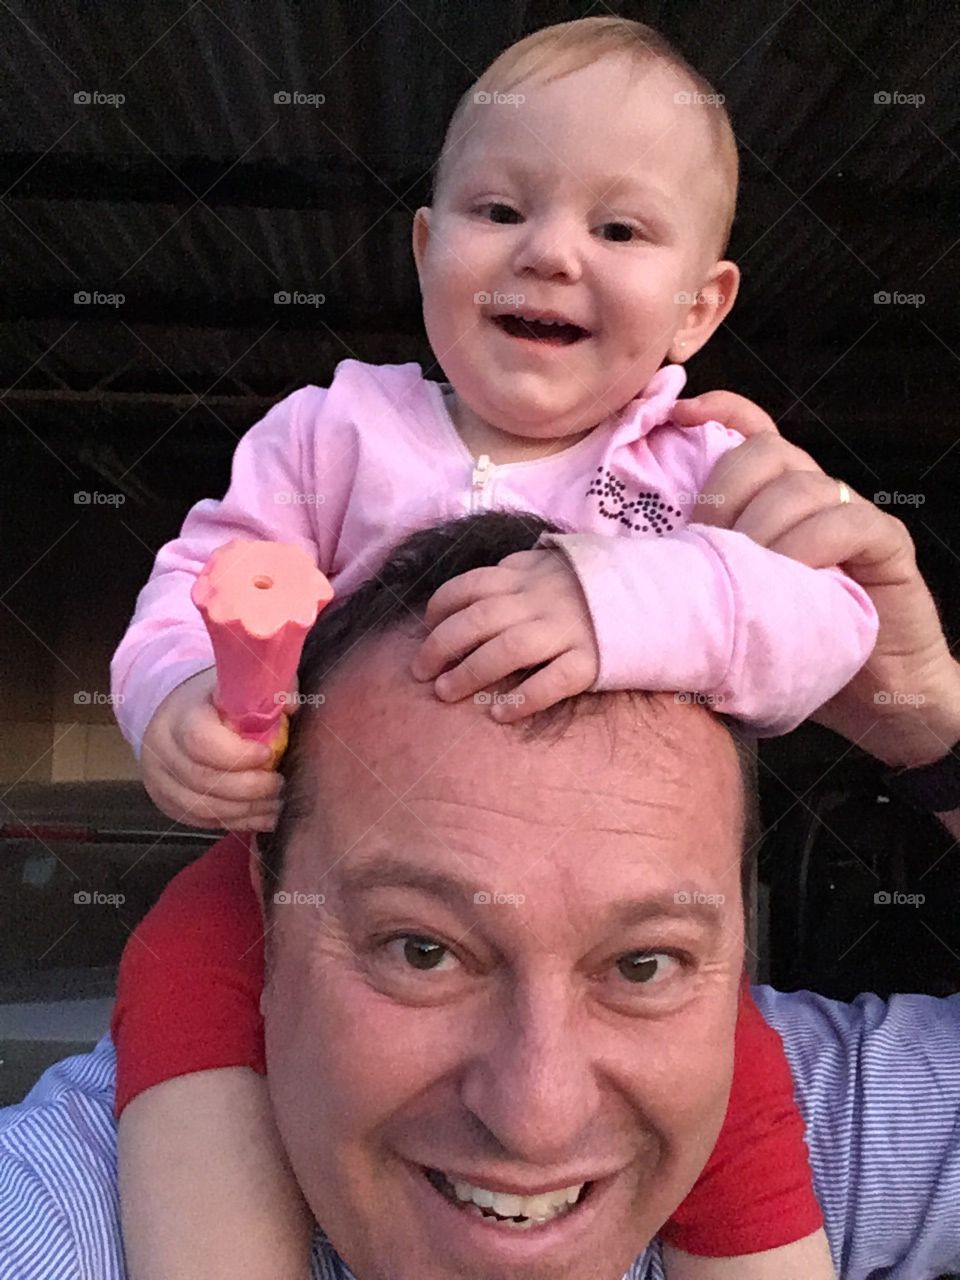 Alegria de viver! Minha pequena, alegre e sorridente, fazendo bagunça na cabeça do papai!